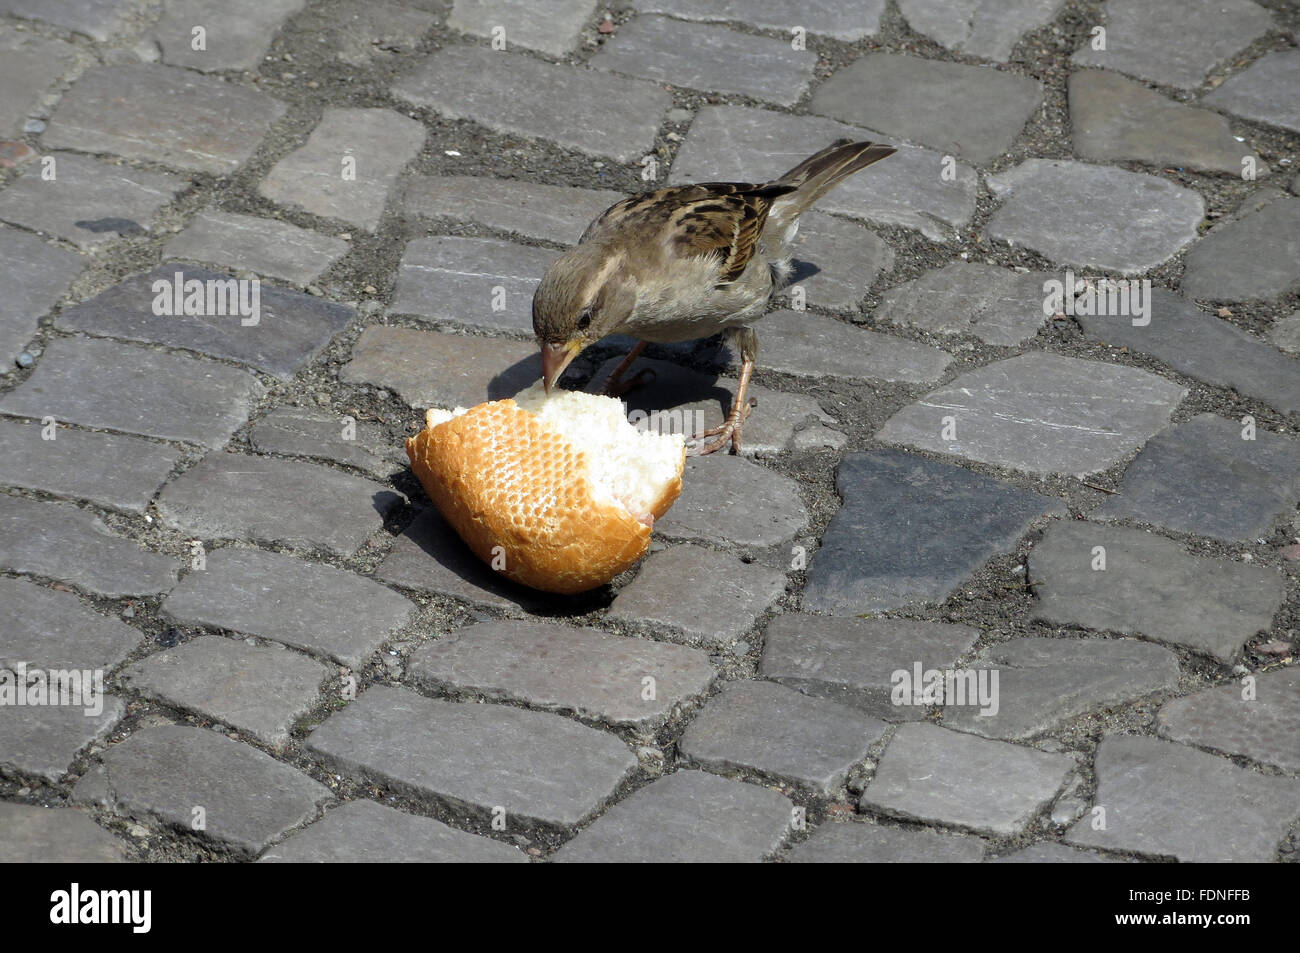 Berlin, Deutschland, Haussperling picken entfernt an eine weggeworfene Brötchen Stockfoto